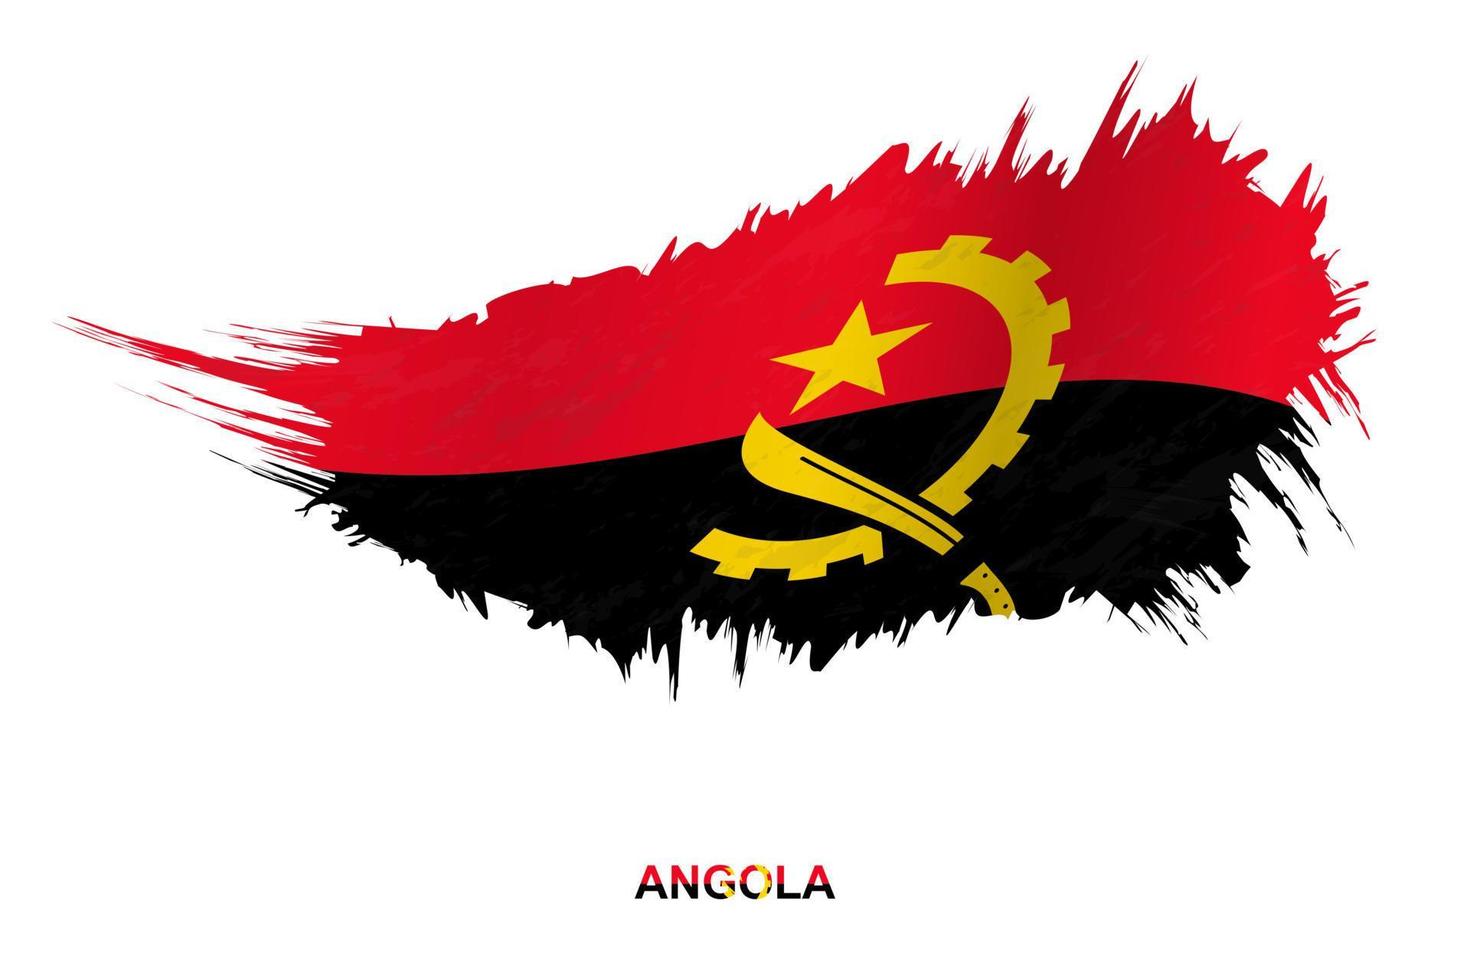 bandeira de angola em estilo grunge com efeito acenando. vetor